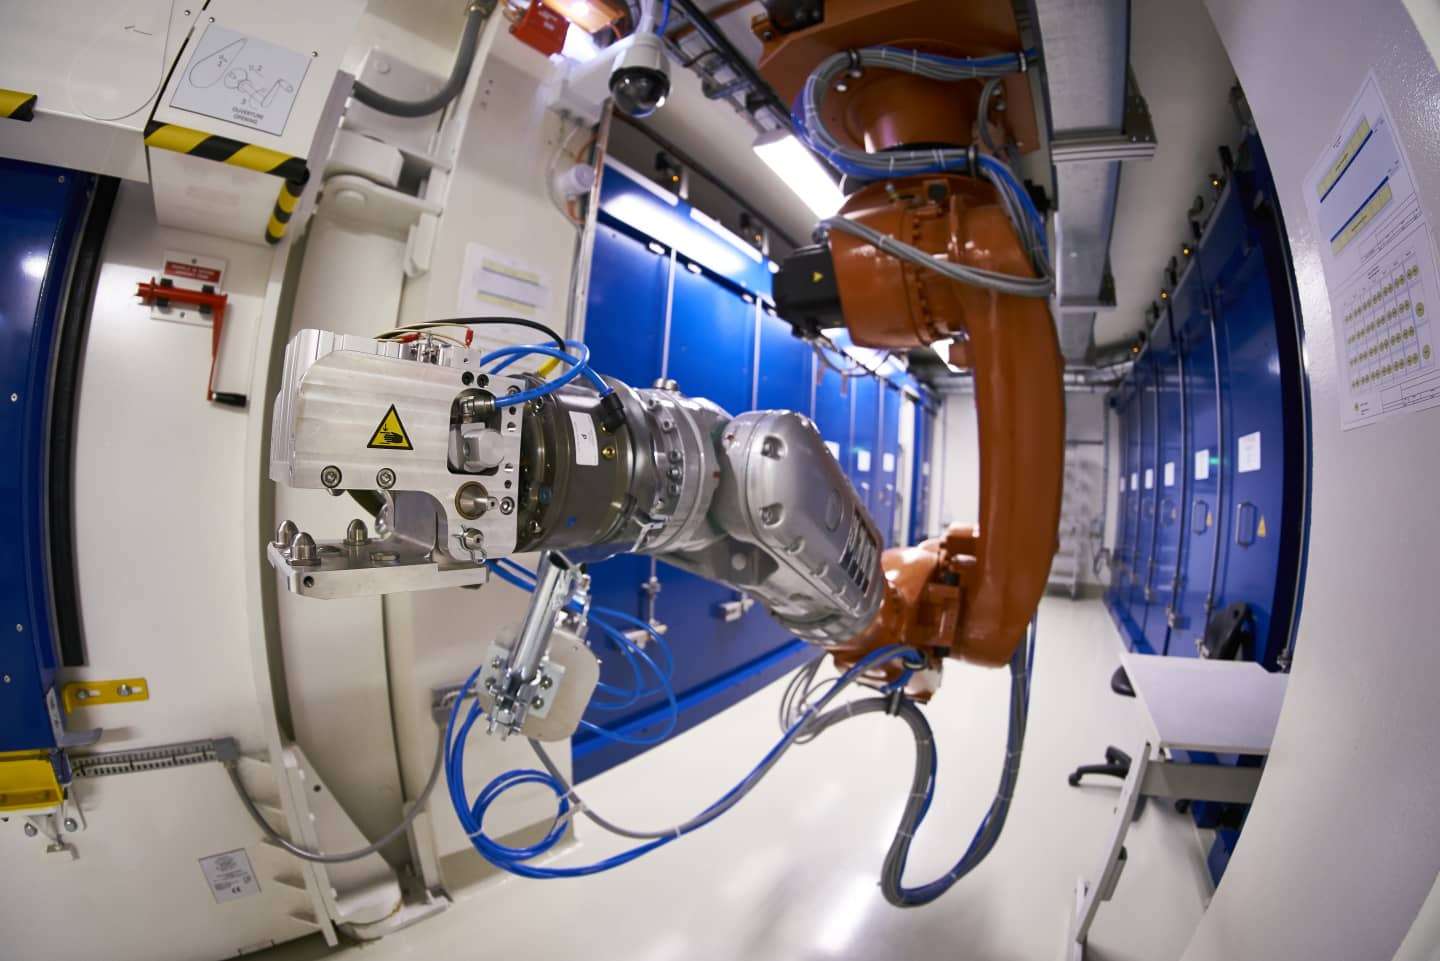 RTU zinātnieki CERN projektā izstrādās nanodozimetrus vēža terapijā izmantojamā starojuma mērīšanai